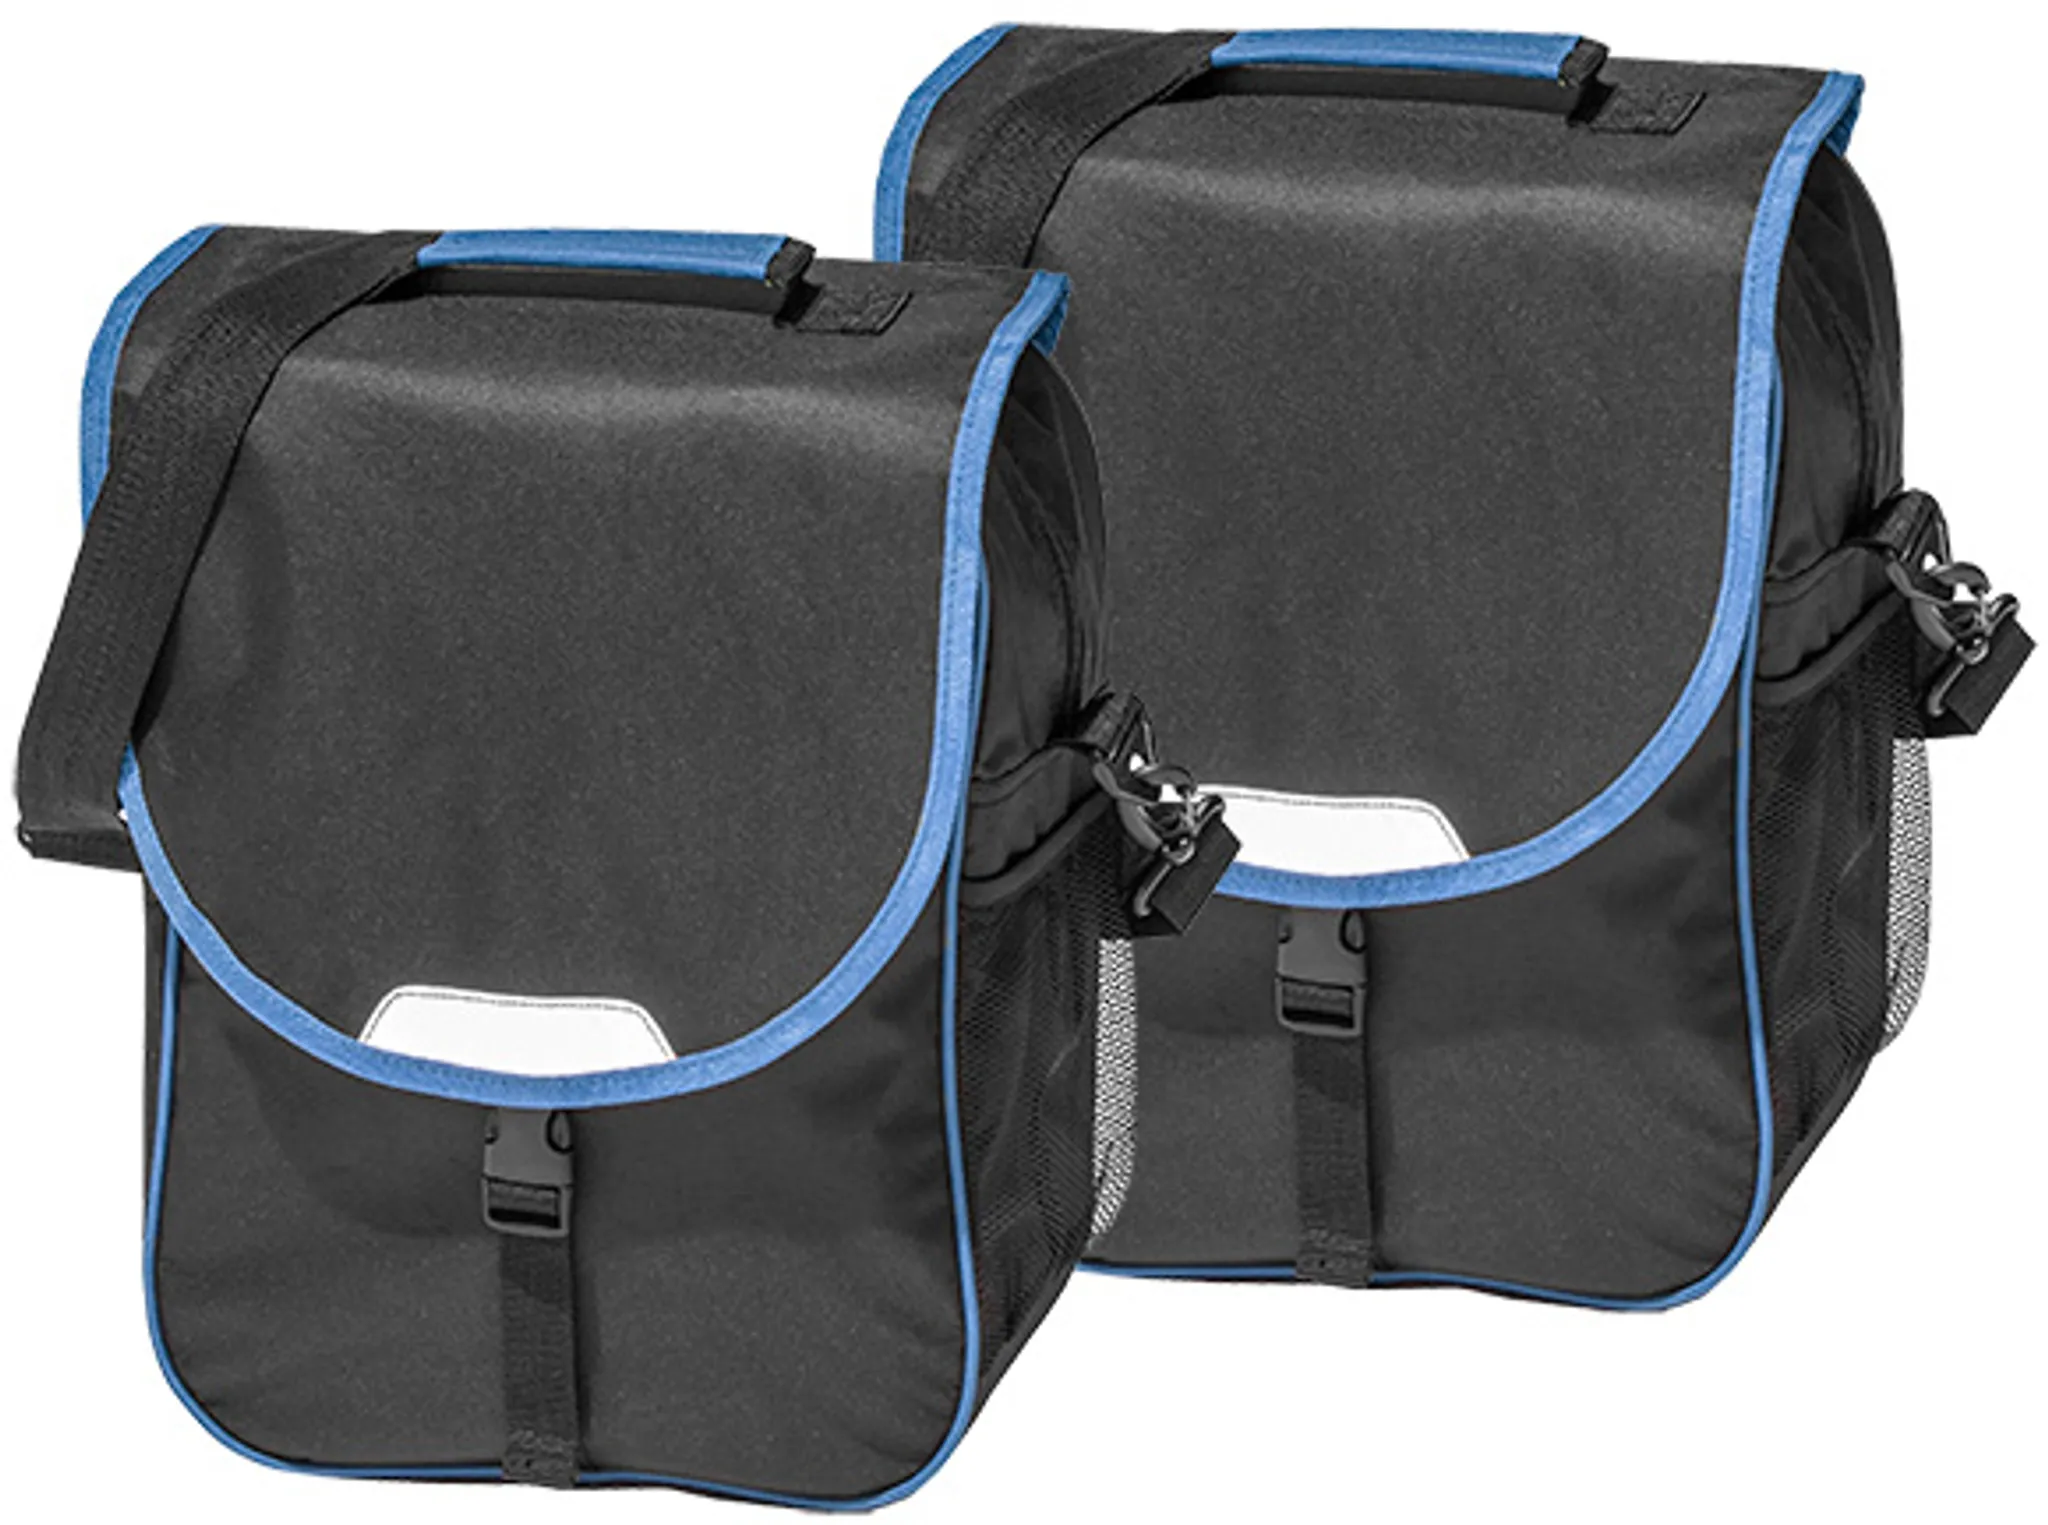 Fahrradtasche 16J030-B08 Gepäckträger Tasche schwarz/blau 2er Set | Rahmentaschen